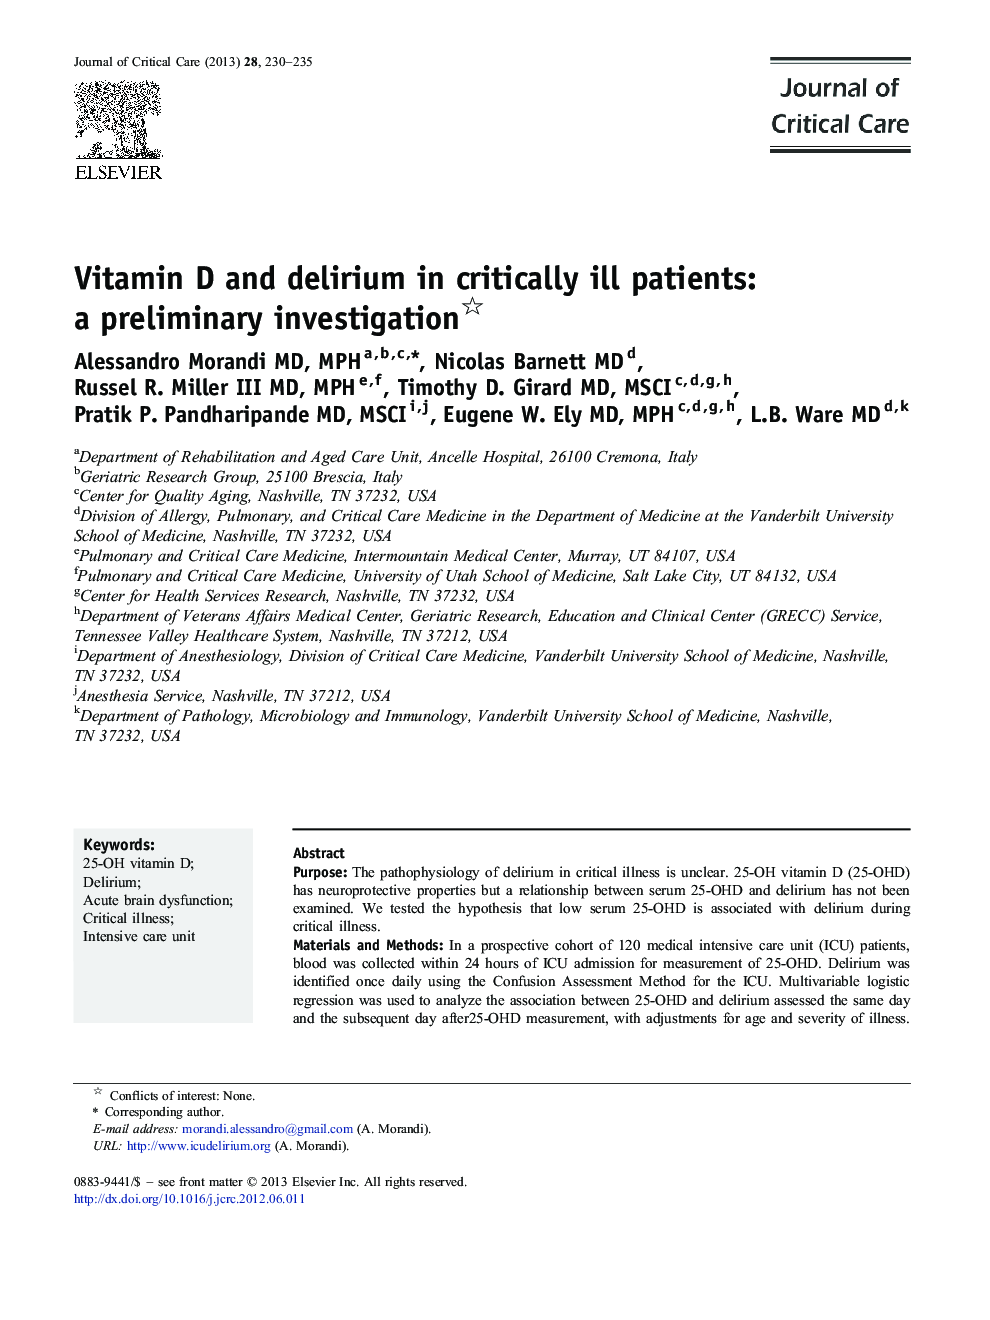 ویتامین D و هذیان در بیماران بدحال: تحقیقات مقدماتی